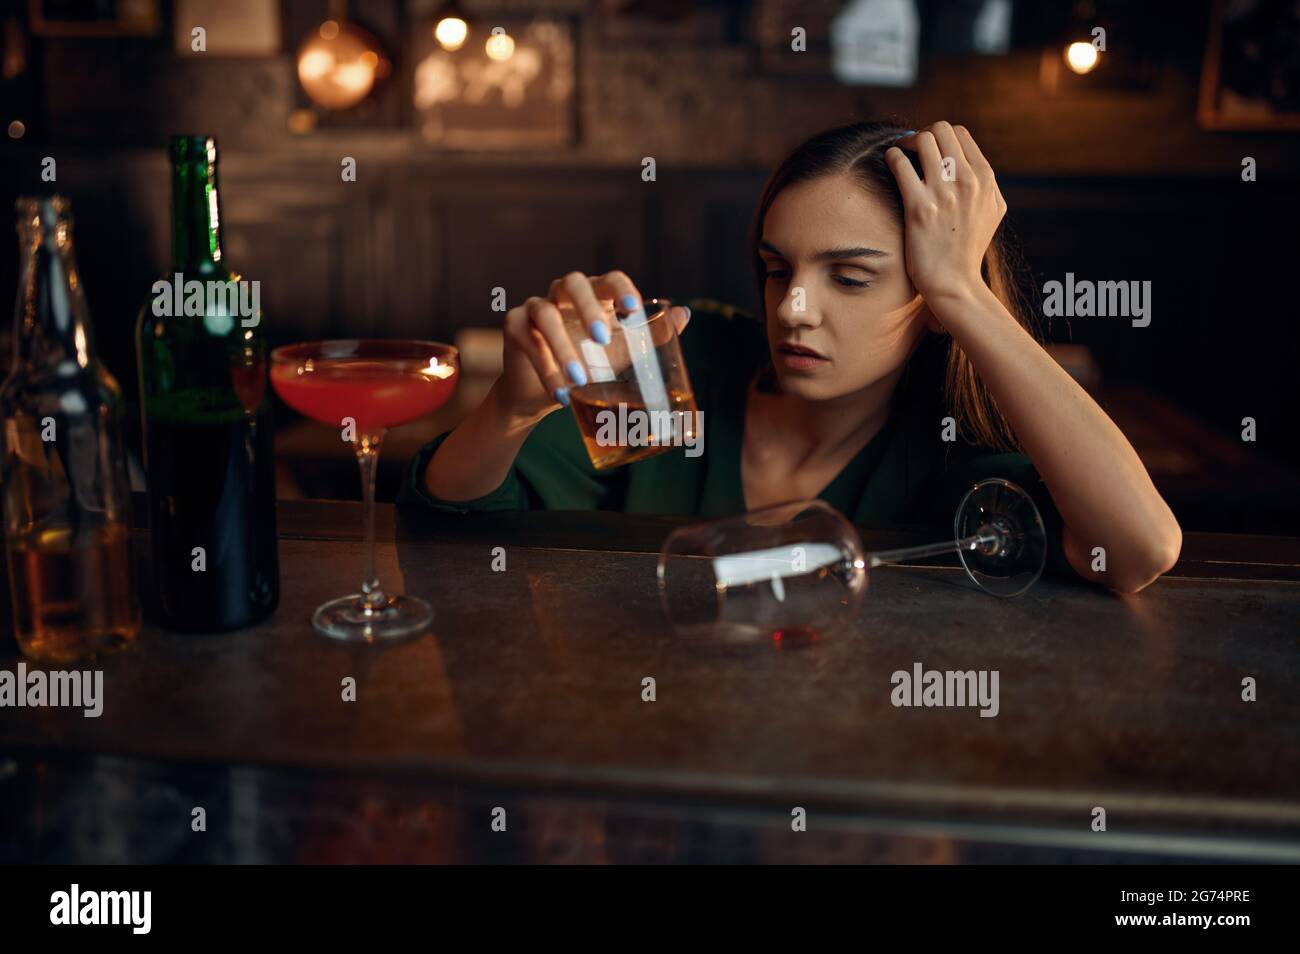 Une femme ivre boit de l'alcool au comptoir du bar Photo Stock - Alamy